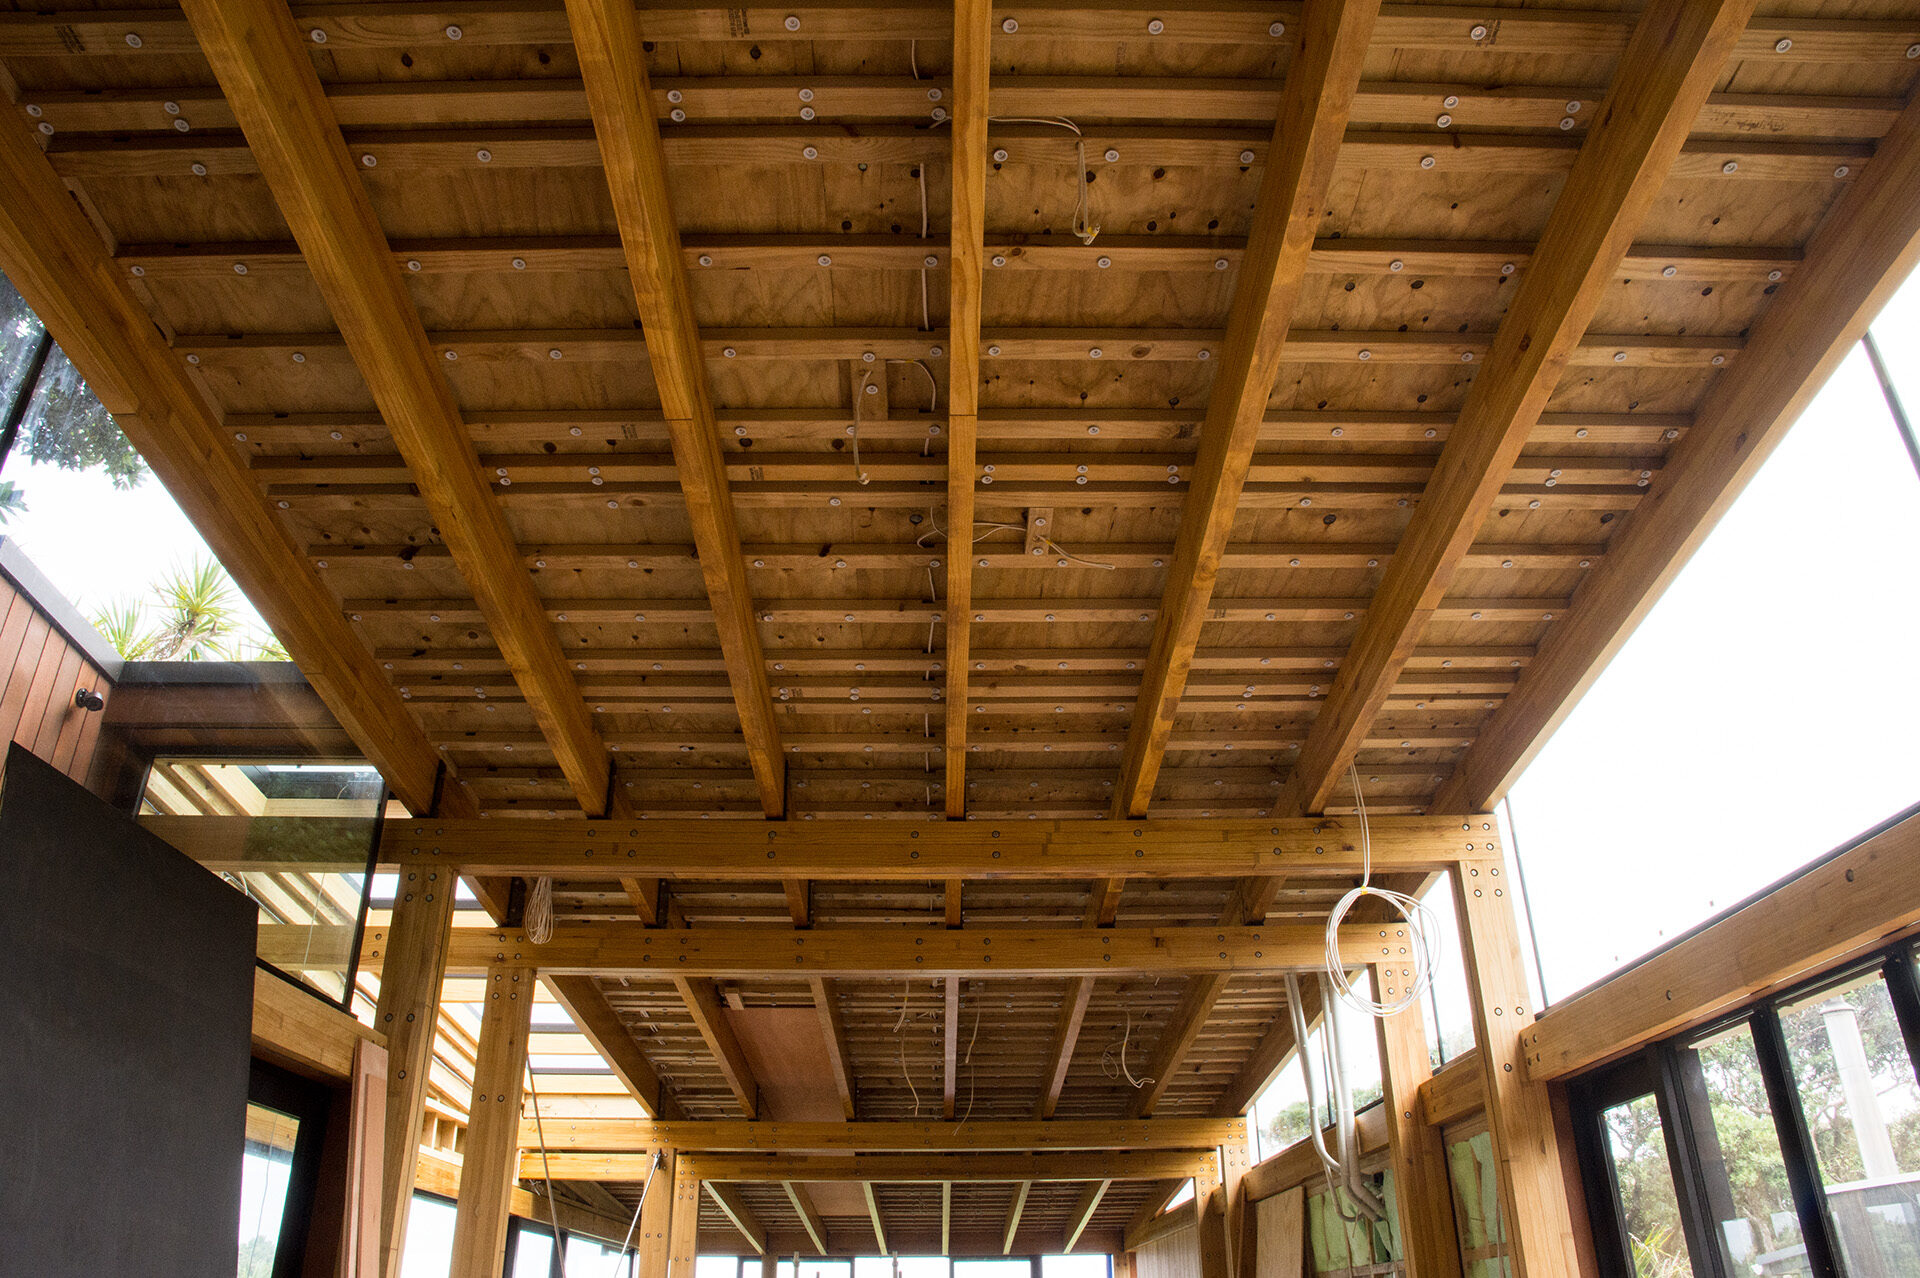 Interior ceiling exposed